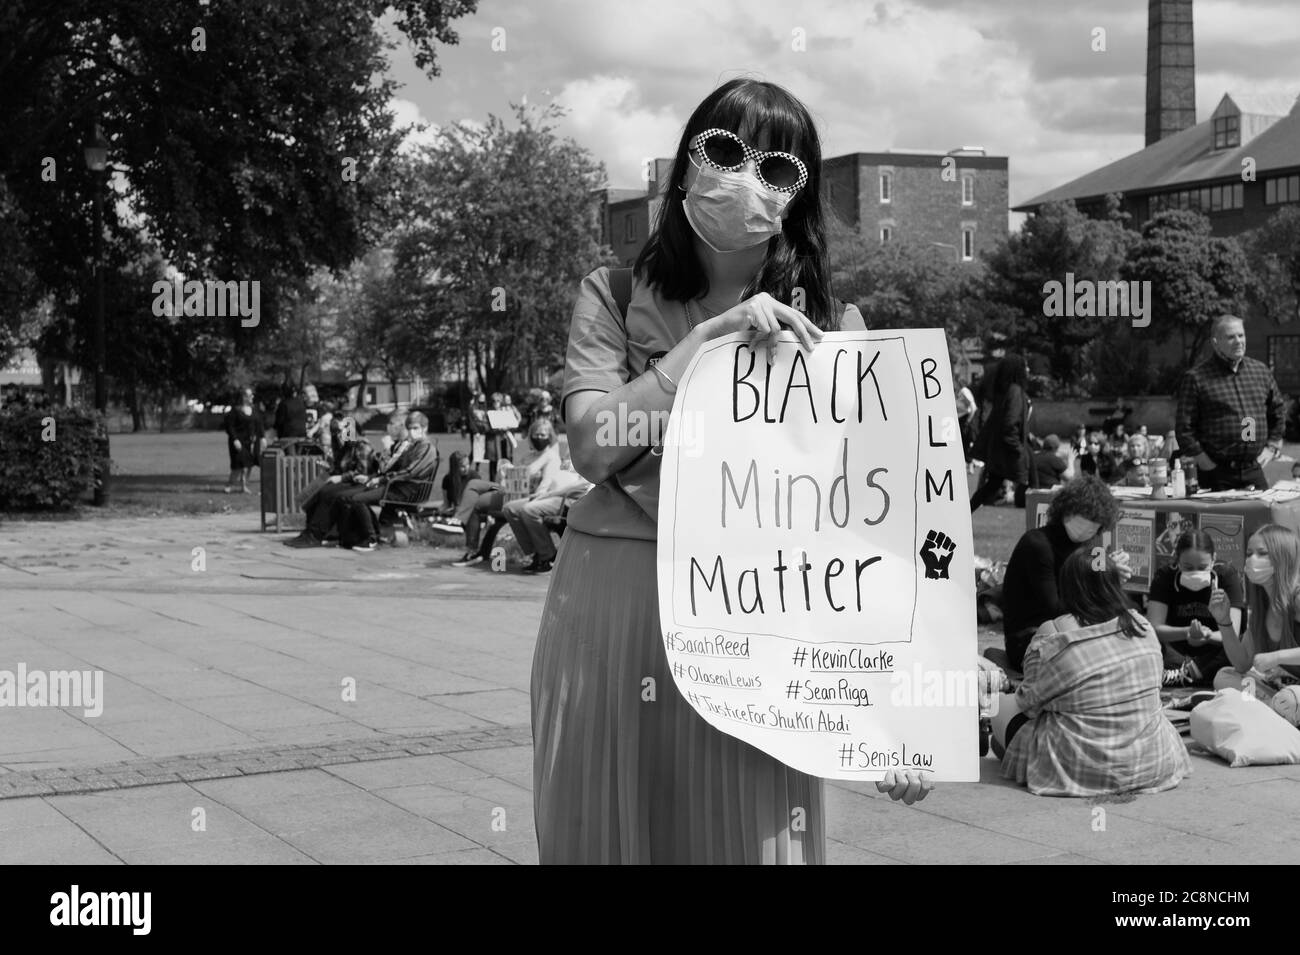 HULL, Reino Unido - 11 DE JULIO de 2020: Manifestación de manifestantes a favor de Black Lives materia reunión usando la máscara del virus de la Corona el 11 de julio de 2020 en Hull, Humberside, Reino Unido. Foto de stock